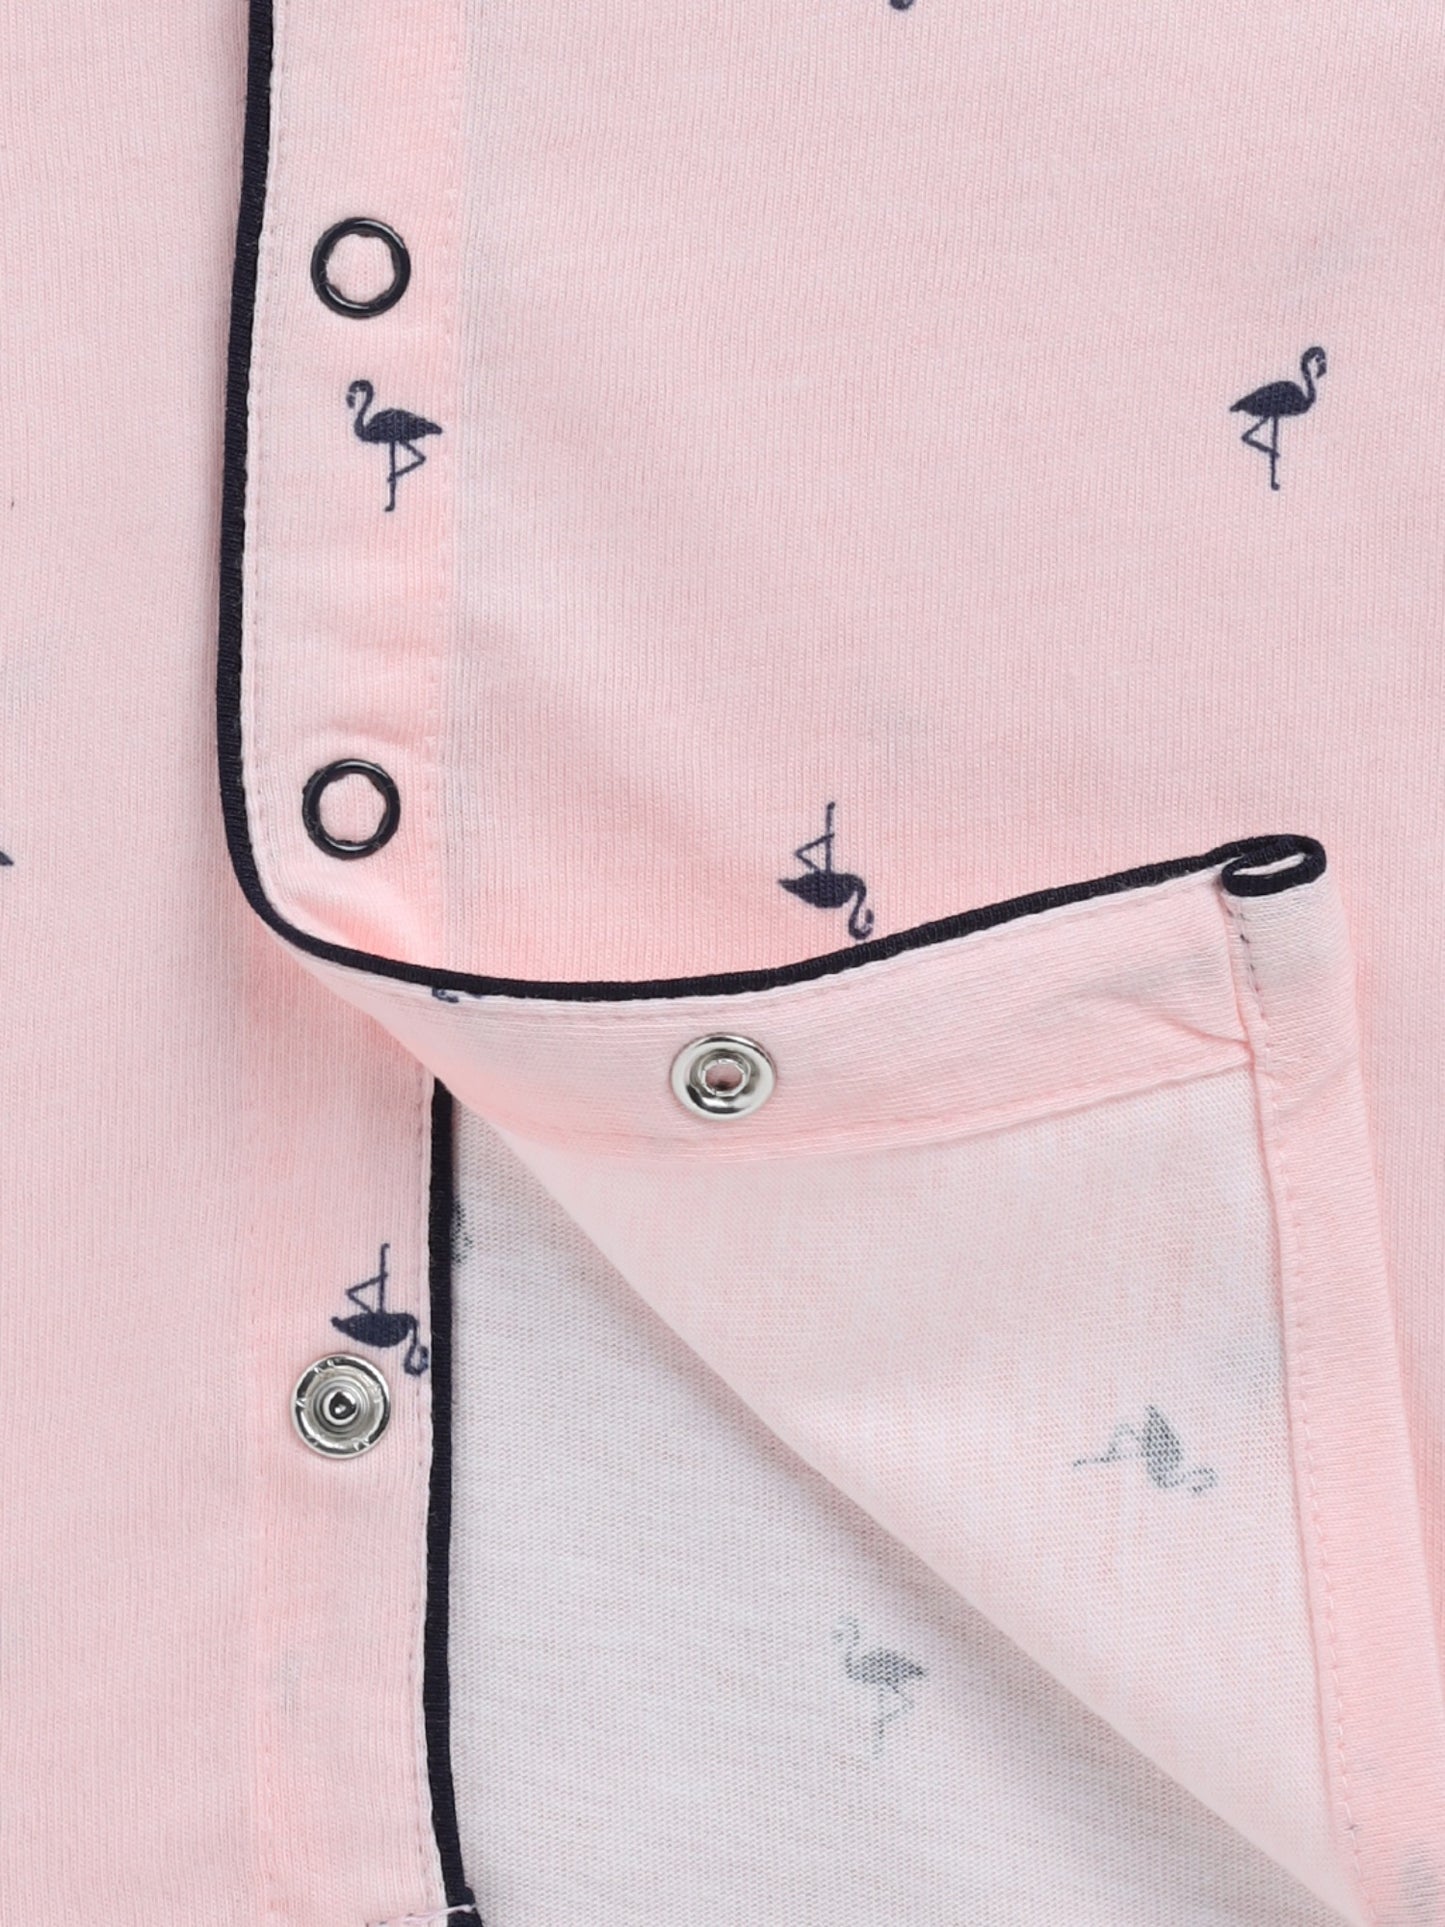 Graphic Pink Cotton Half Sleeve Nightwear Set